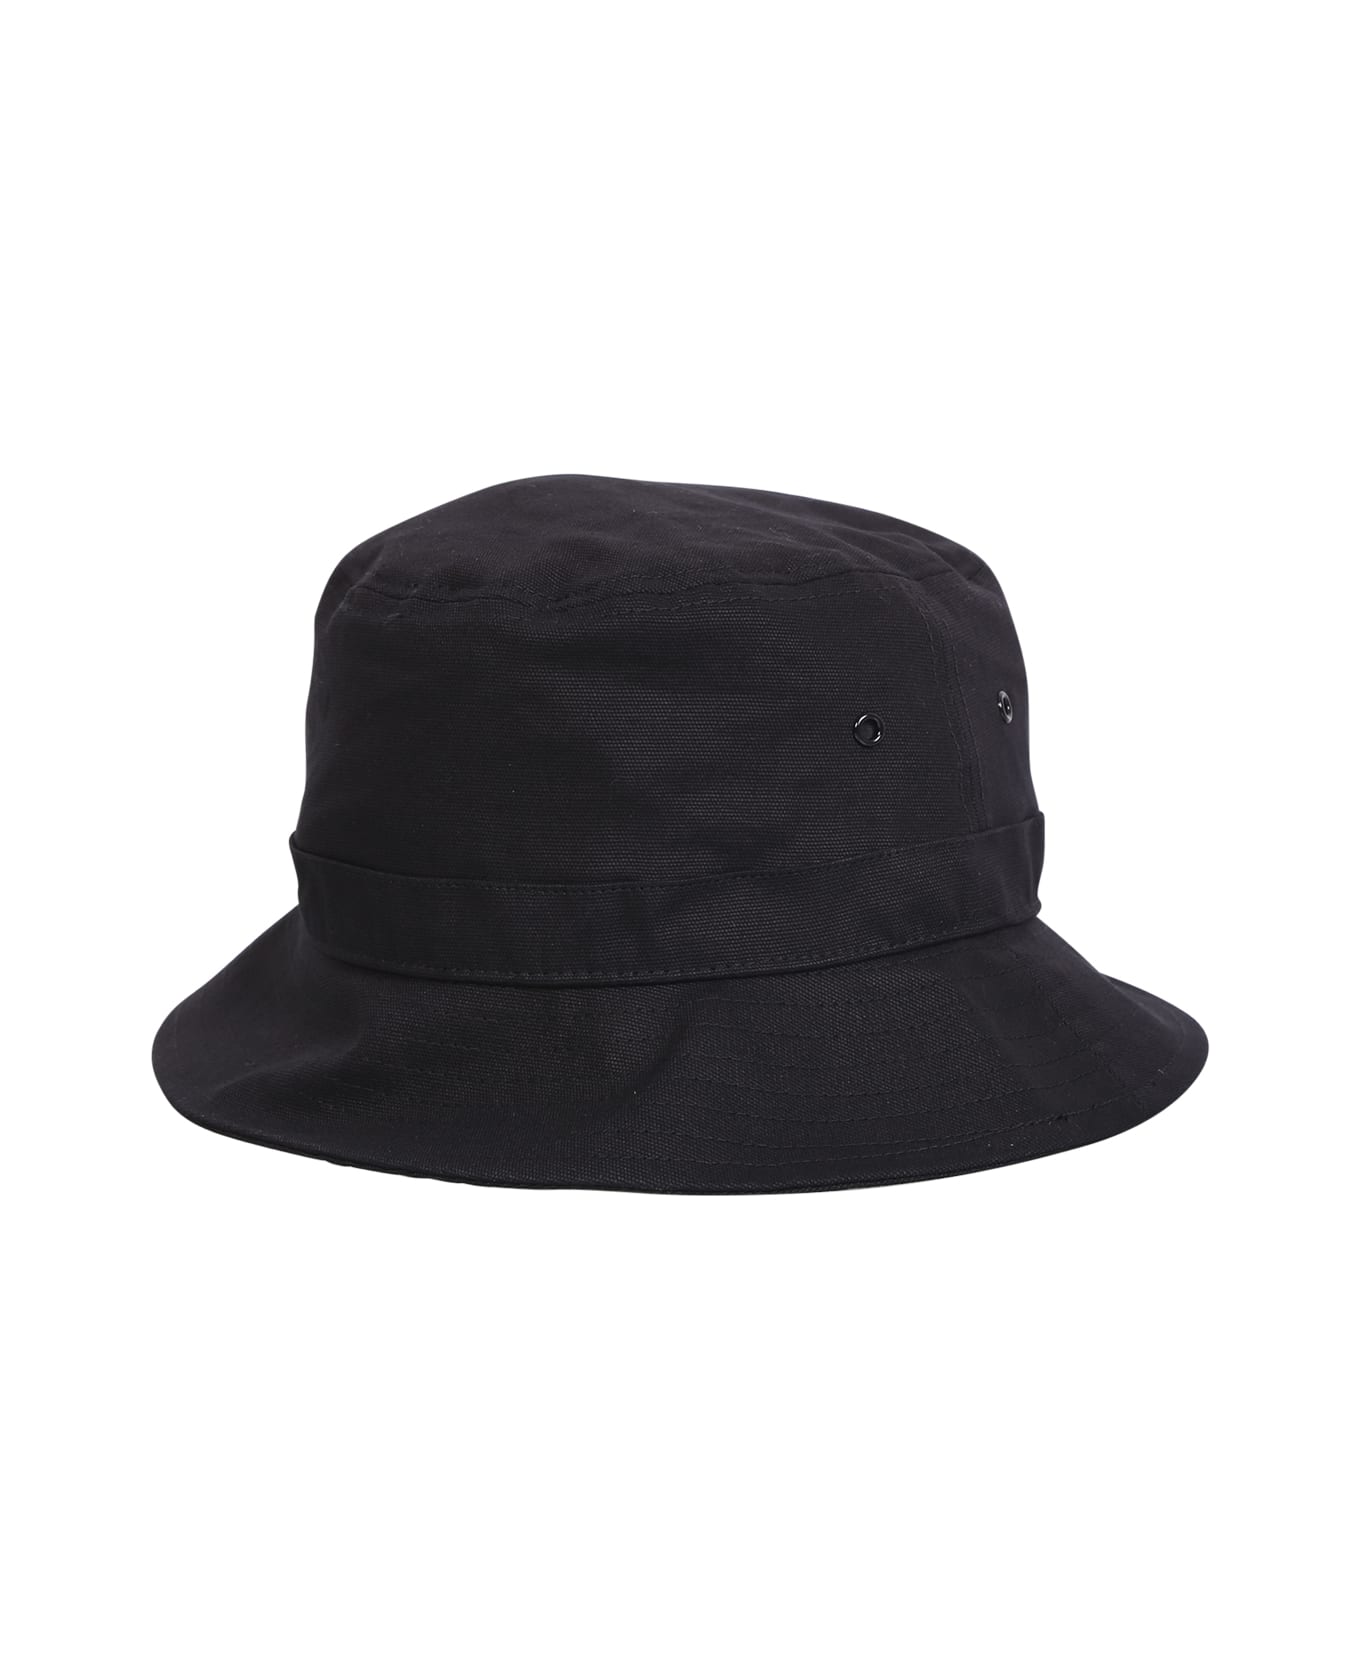 Carhartt Black Bucket Hat - Black